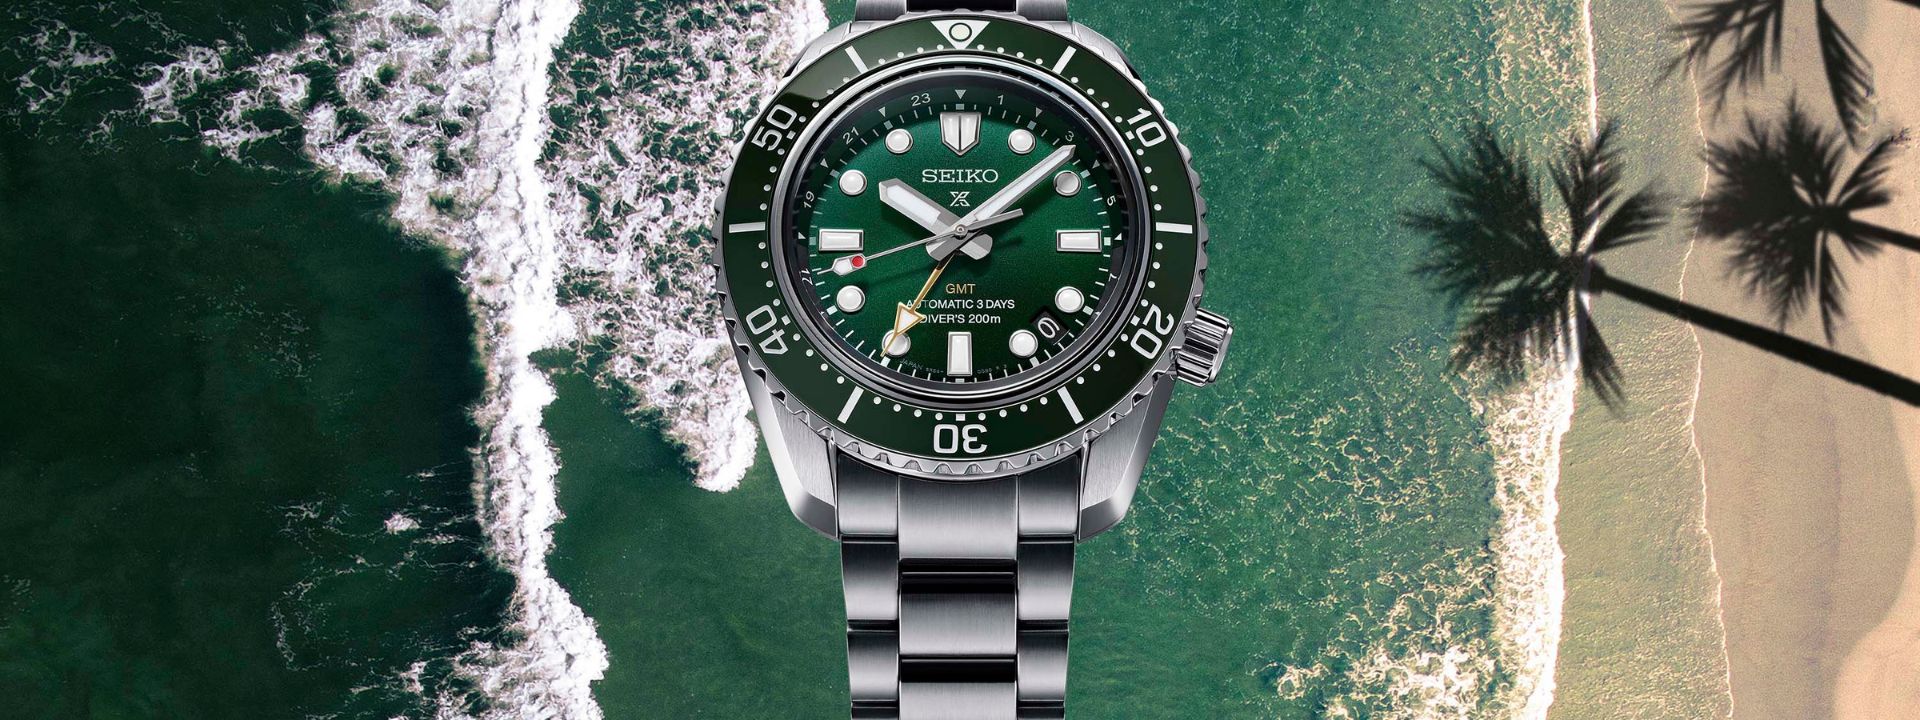 No momento você está vendo Movido por um novo movimento de três dias, um relógio de mergulho mecânico GMT, junta-se à coleção Seiko Prospex pela primeira vez